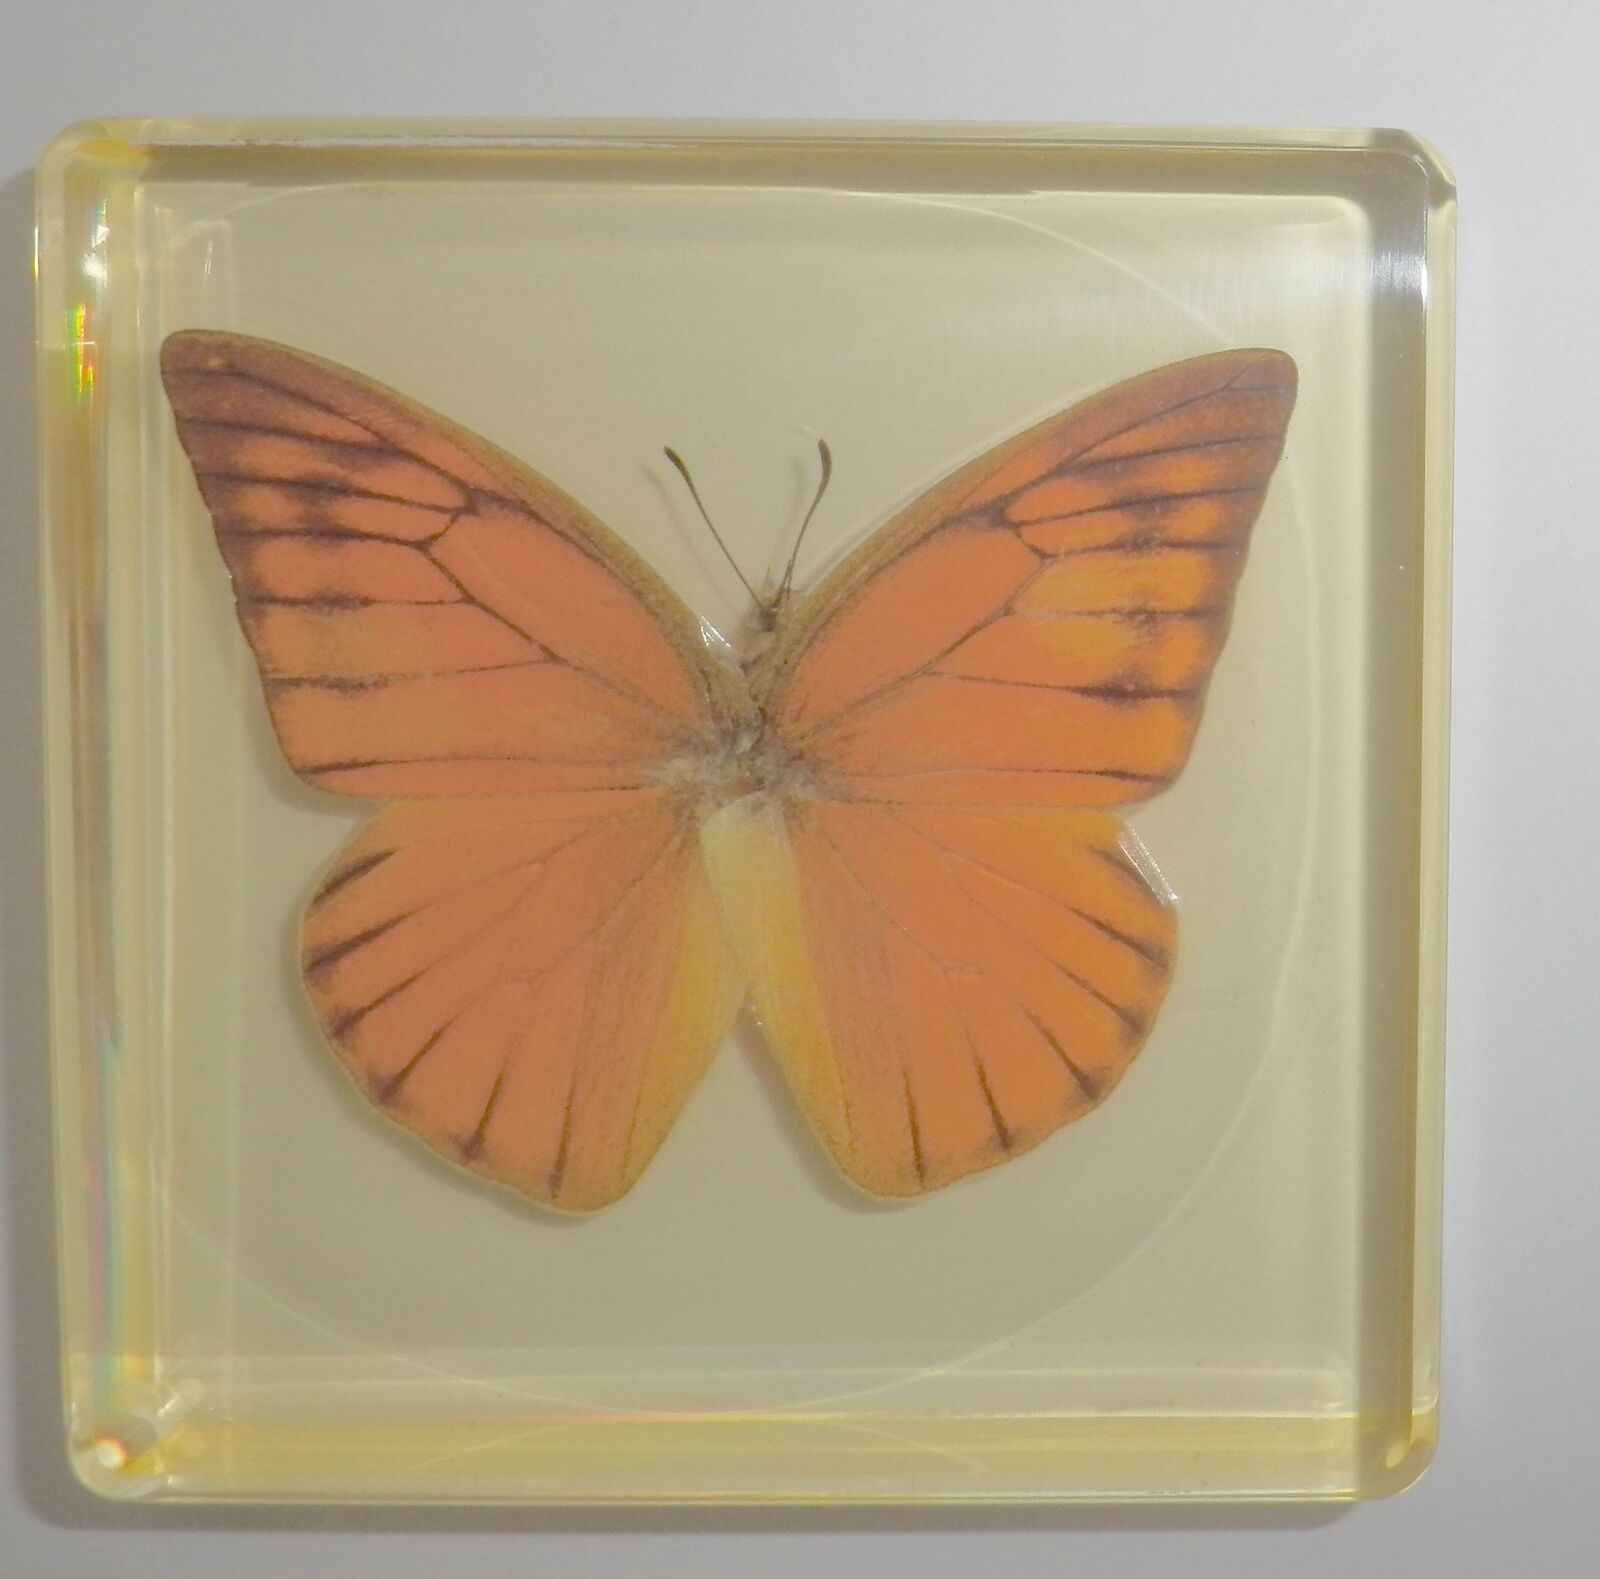 Orange Albatross Butterfly in Amber Clear Block Education Insect Specimen